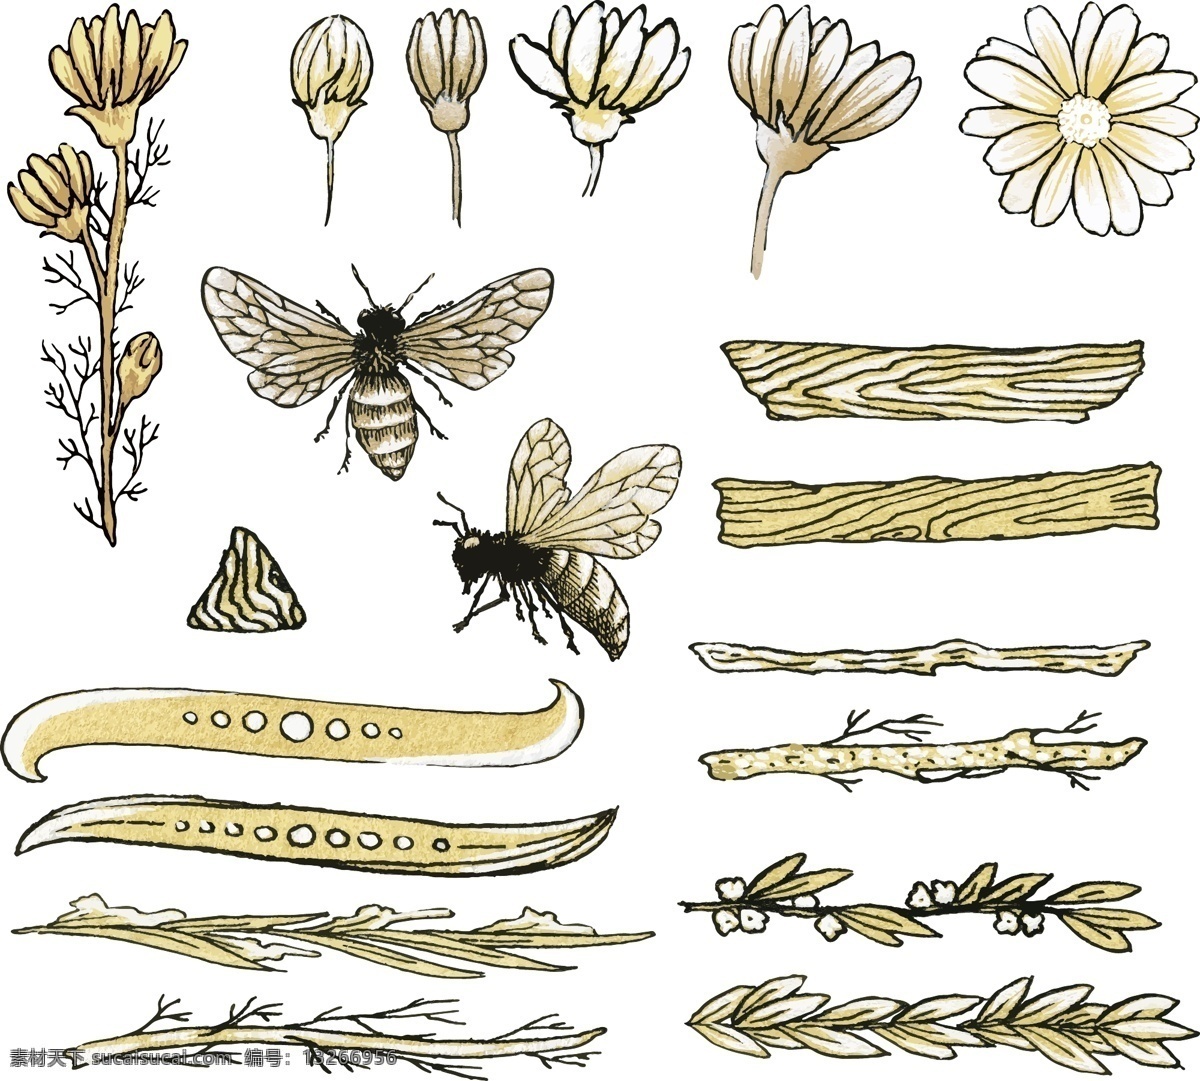 蜜蜂 矢量 装饰 创意 简约 矢量素材 背景素材 设计素材